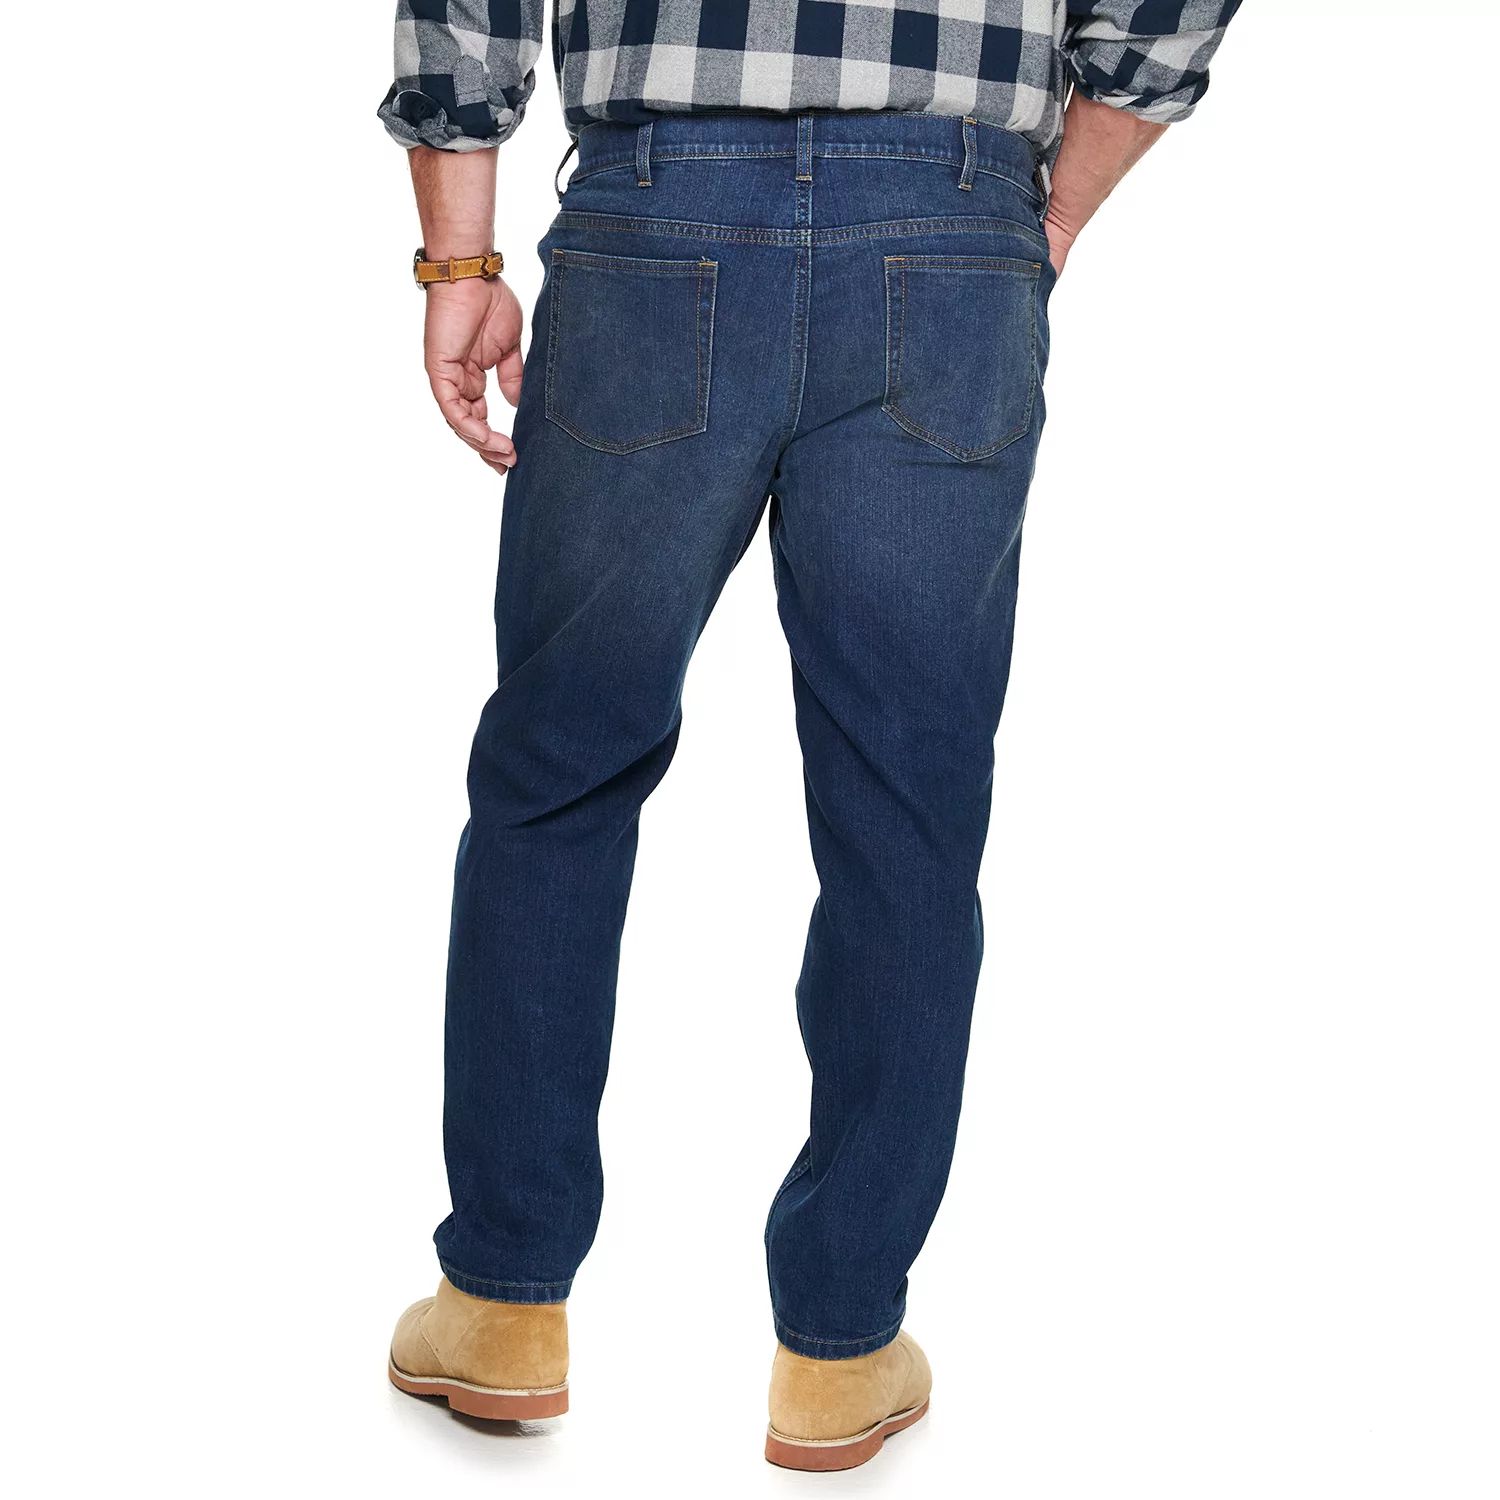 Зауженные джинсы стандартного кроя Big & Tall Sonoma Goods For Life